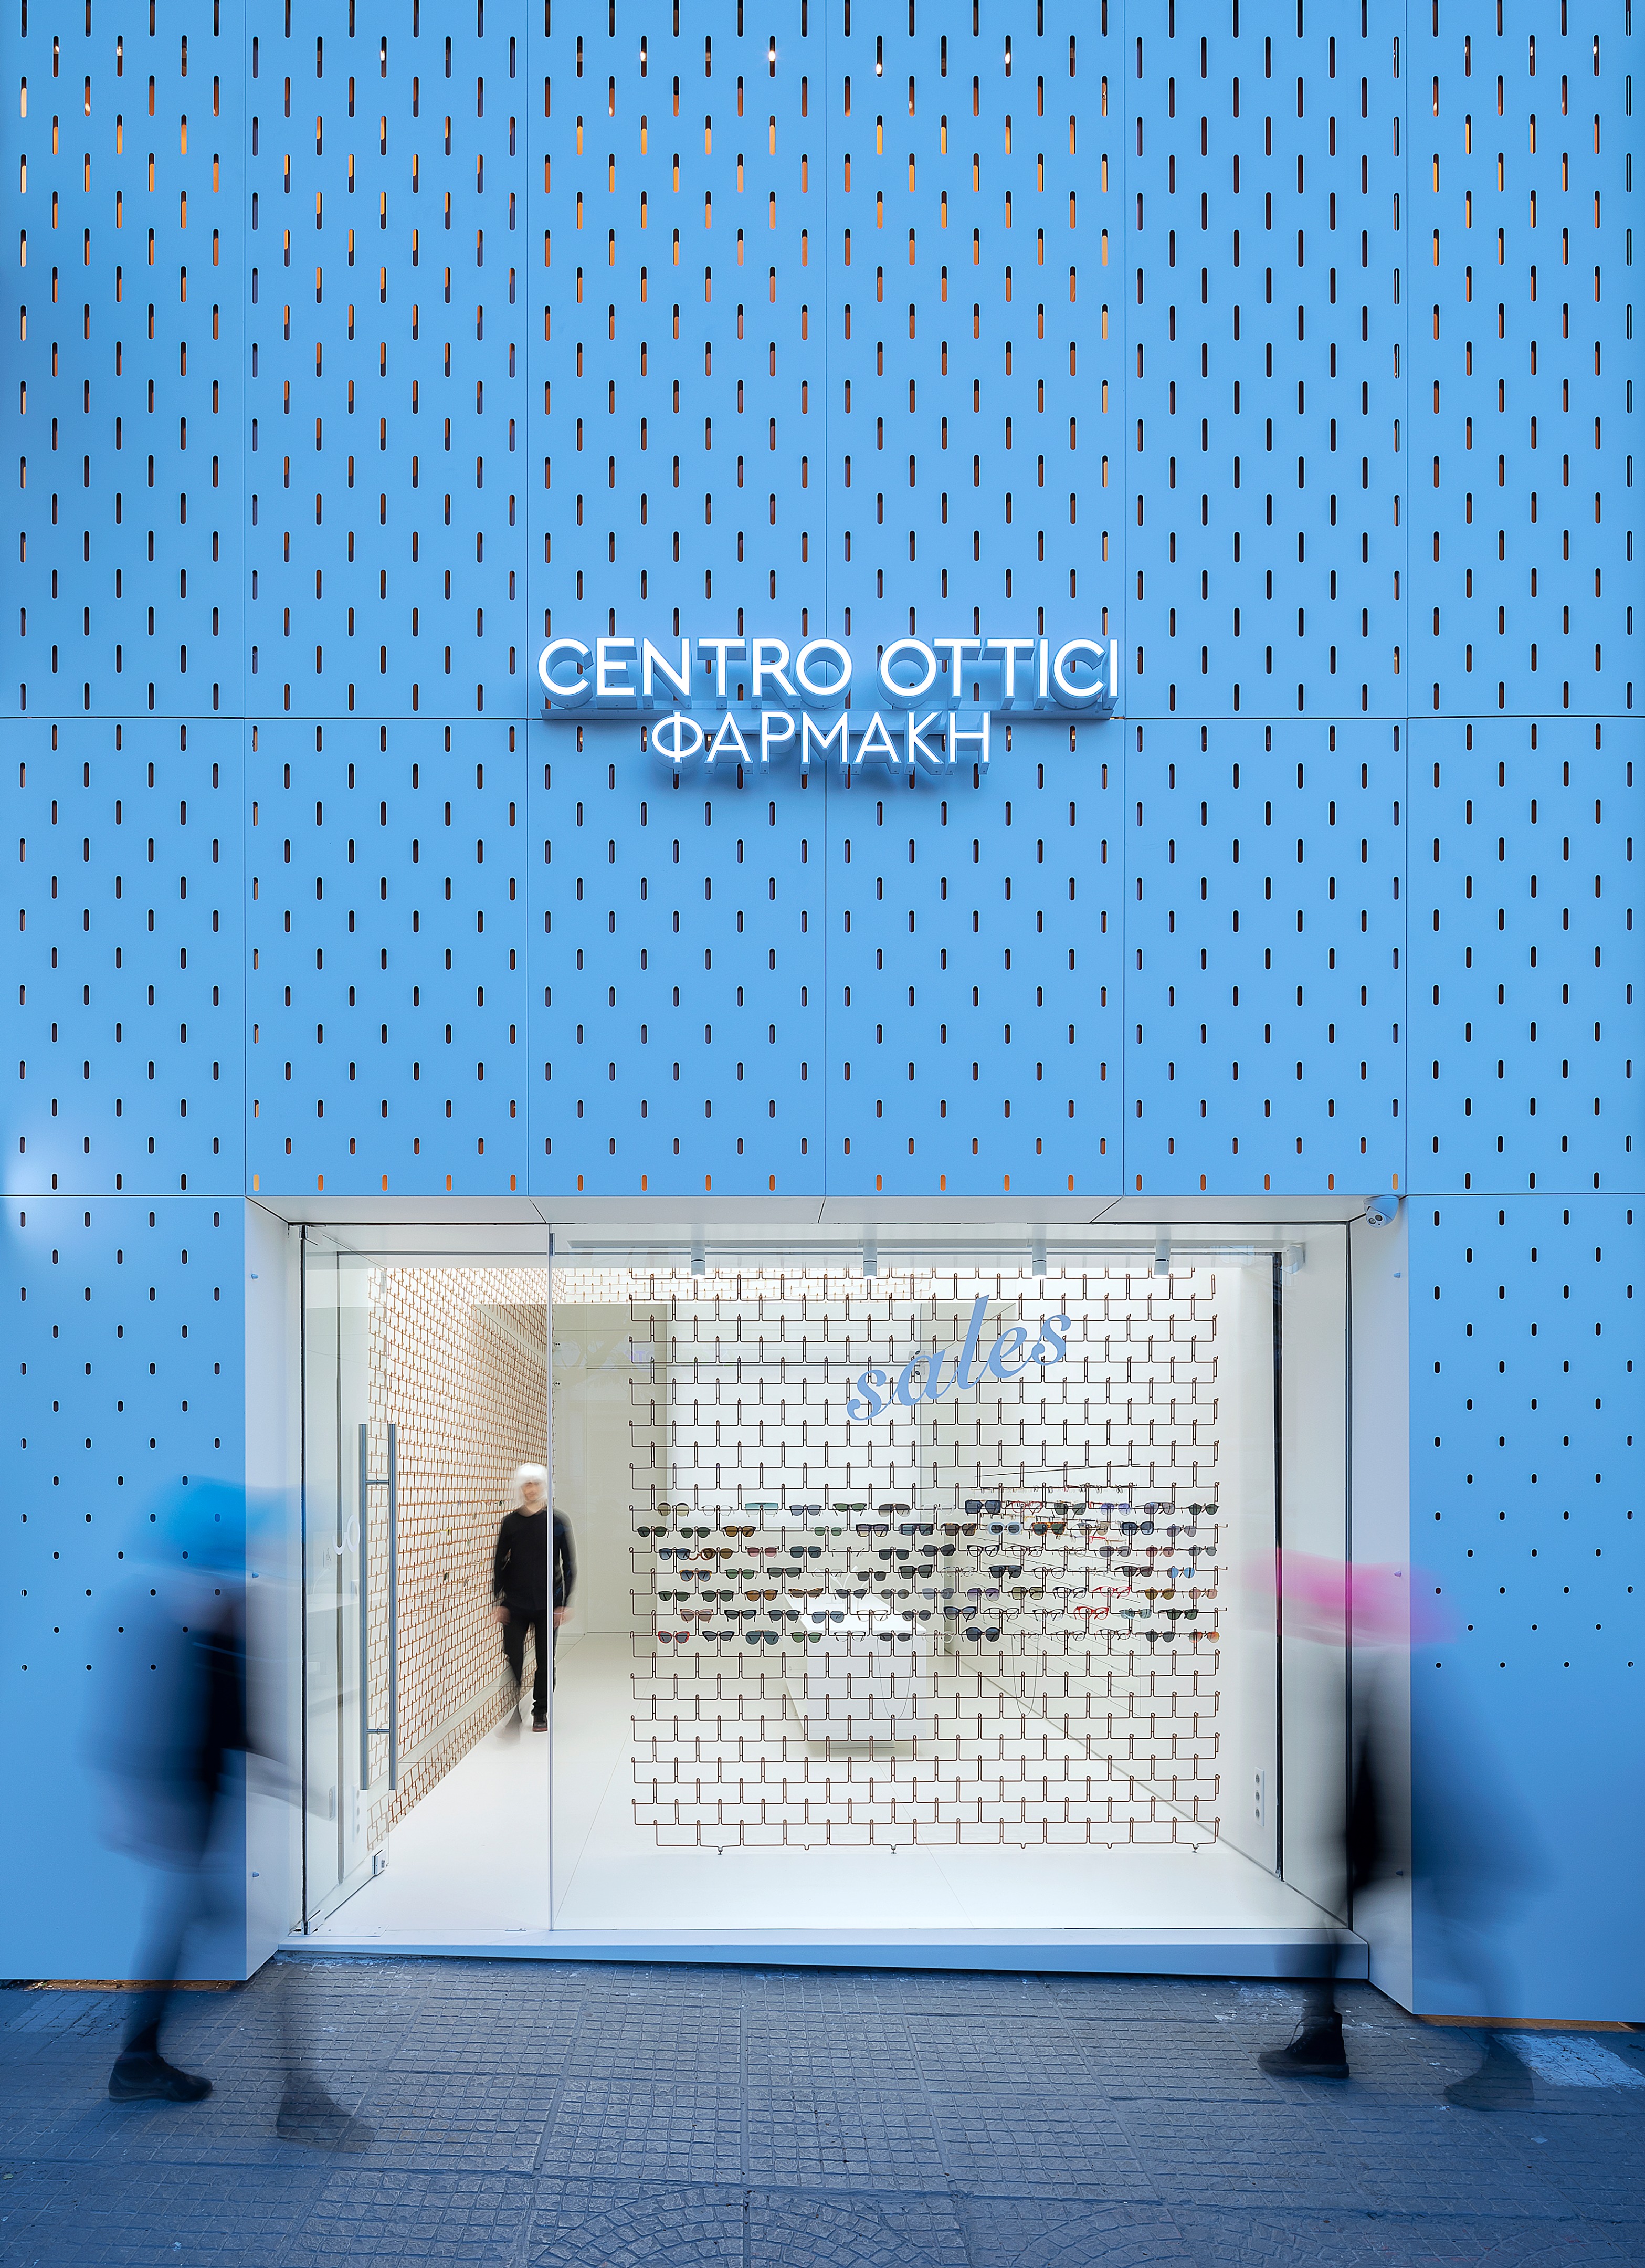 Centro Ottici-1